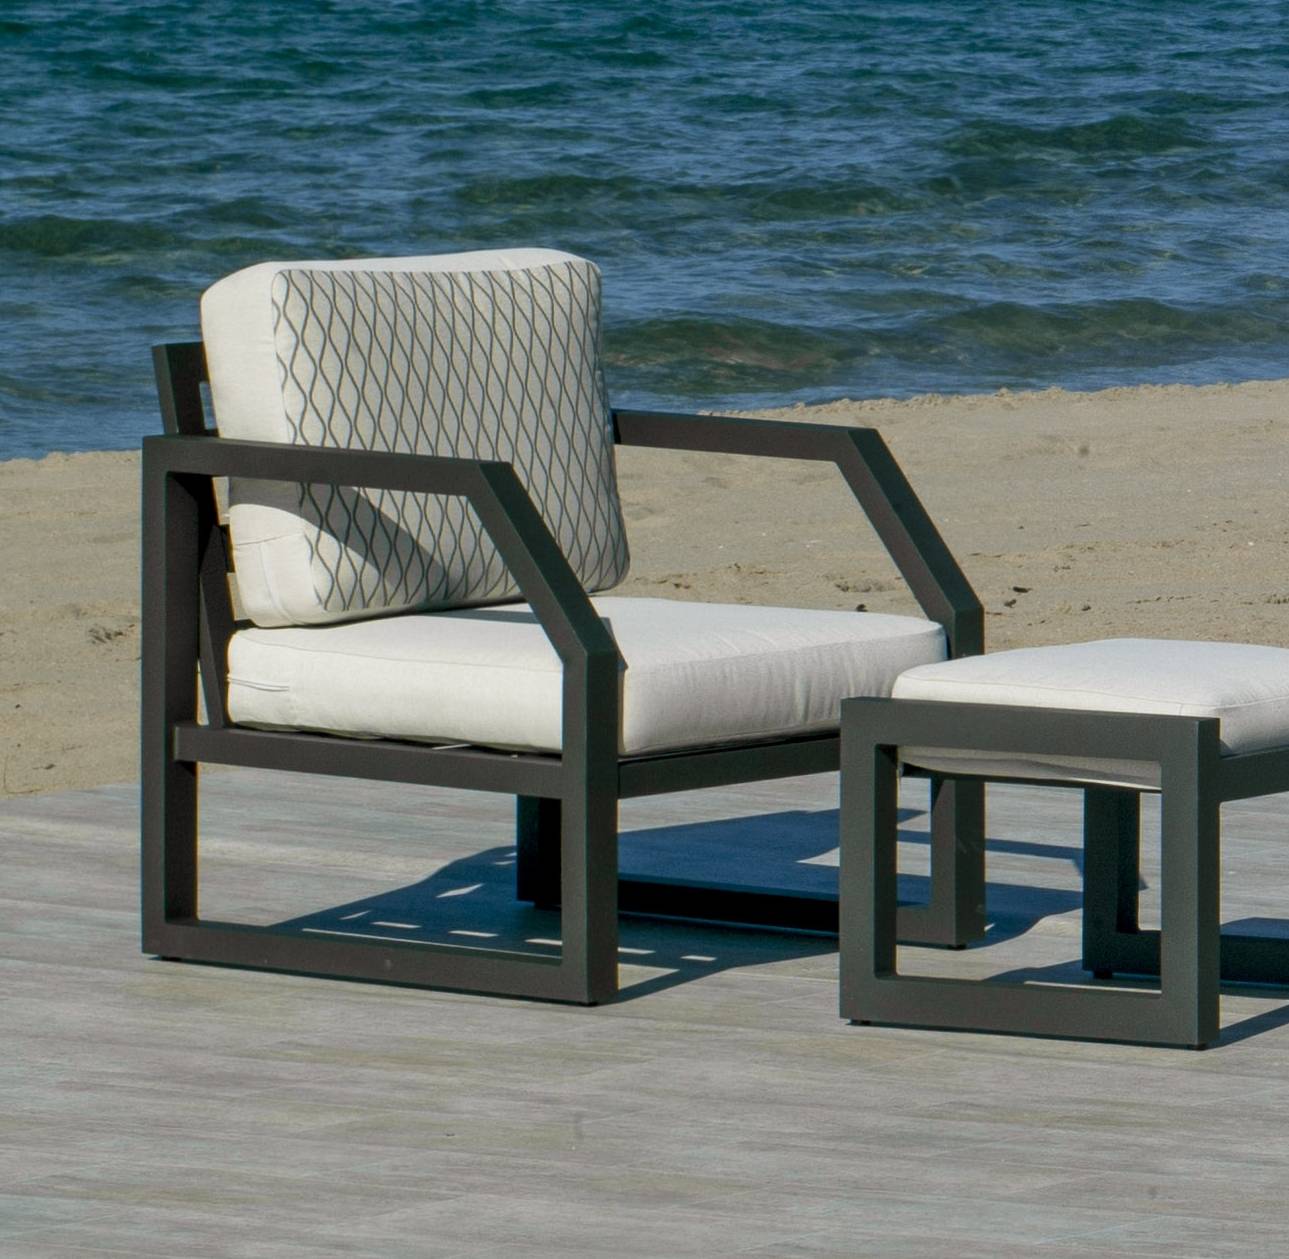 Set Aluminio Luxe Bellagio-10 - Conjunto aluminio: 1 sofá 3 plazas + 2 sillones + mesa de centro + 2 taburetes + cojines. Colores: blanco, antracita o champagne.